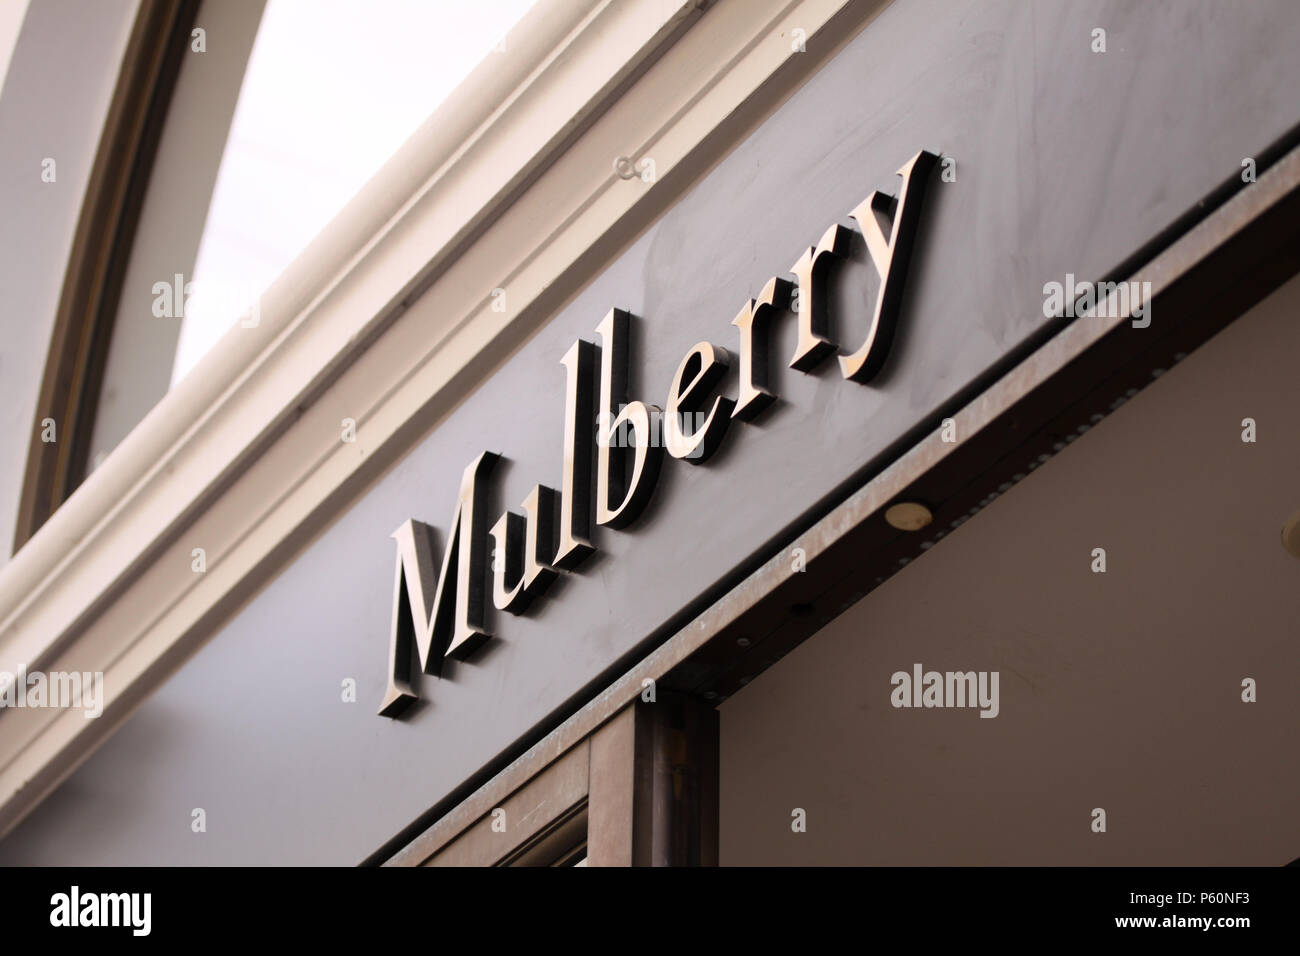 Copenhague, Danemark - 26 juin 2018 : groupe du logo Mulberry en face de la mode et de sacs à main store. Mulberry est une société connue pour la mode en cuir. Banque D'Images